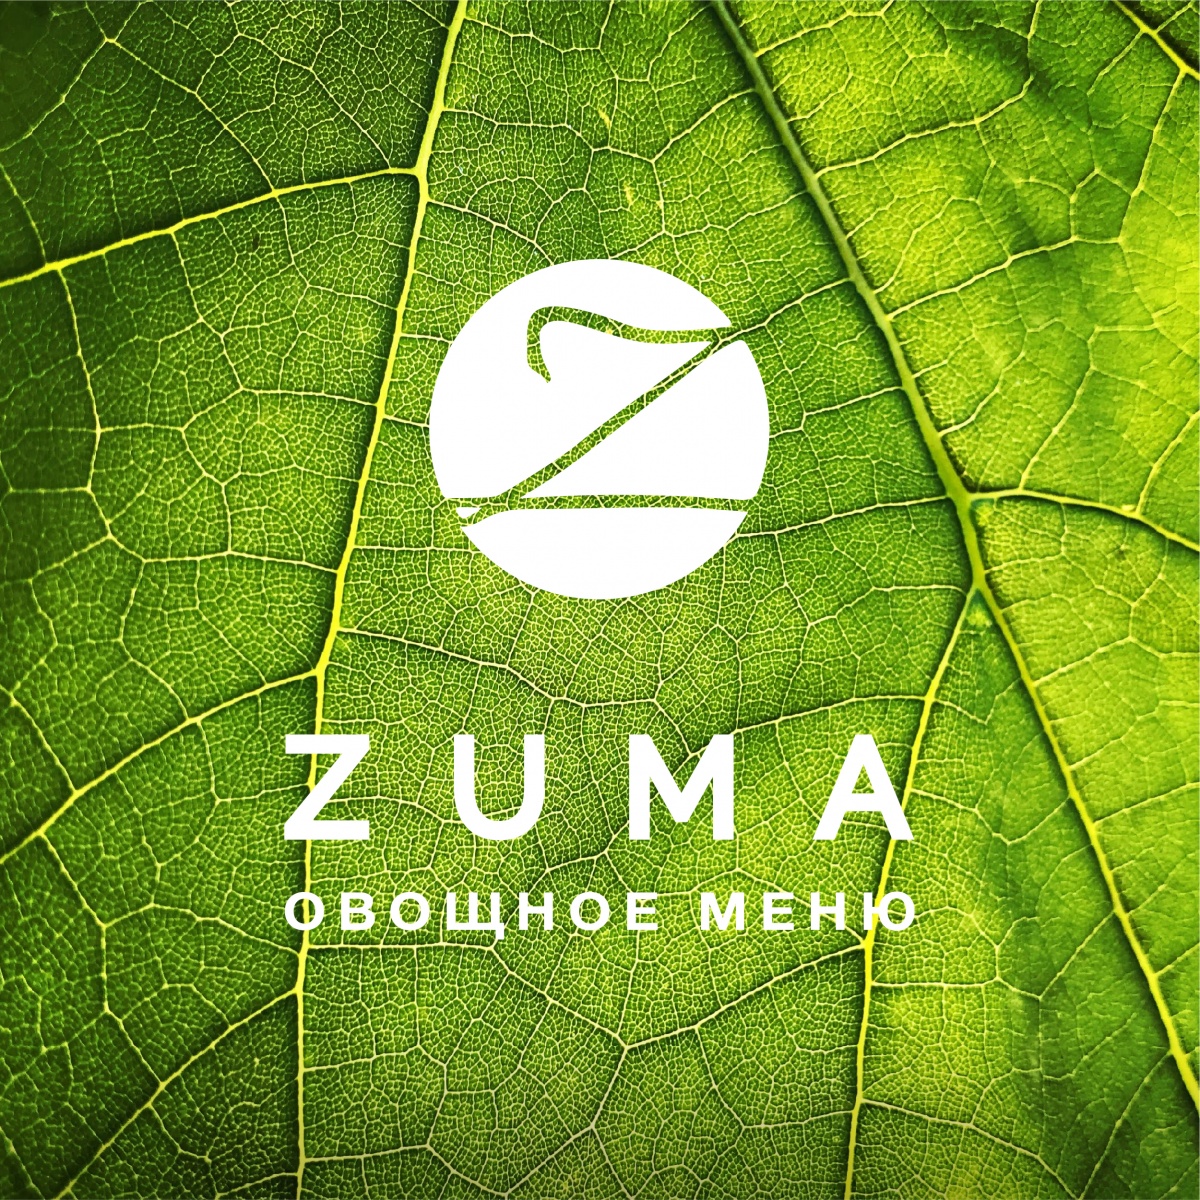    Zuma